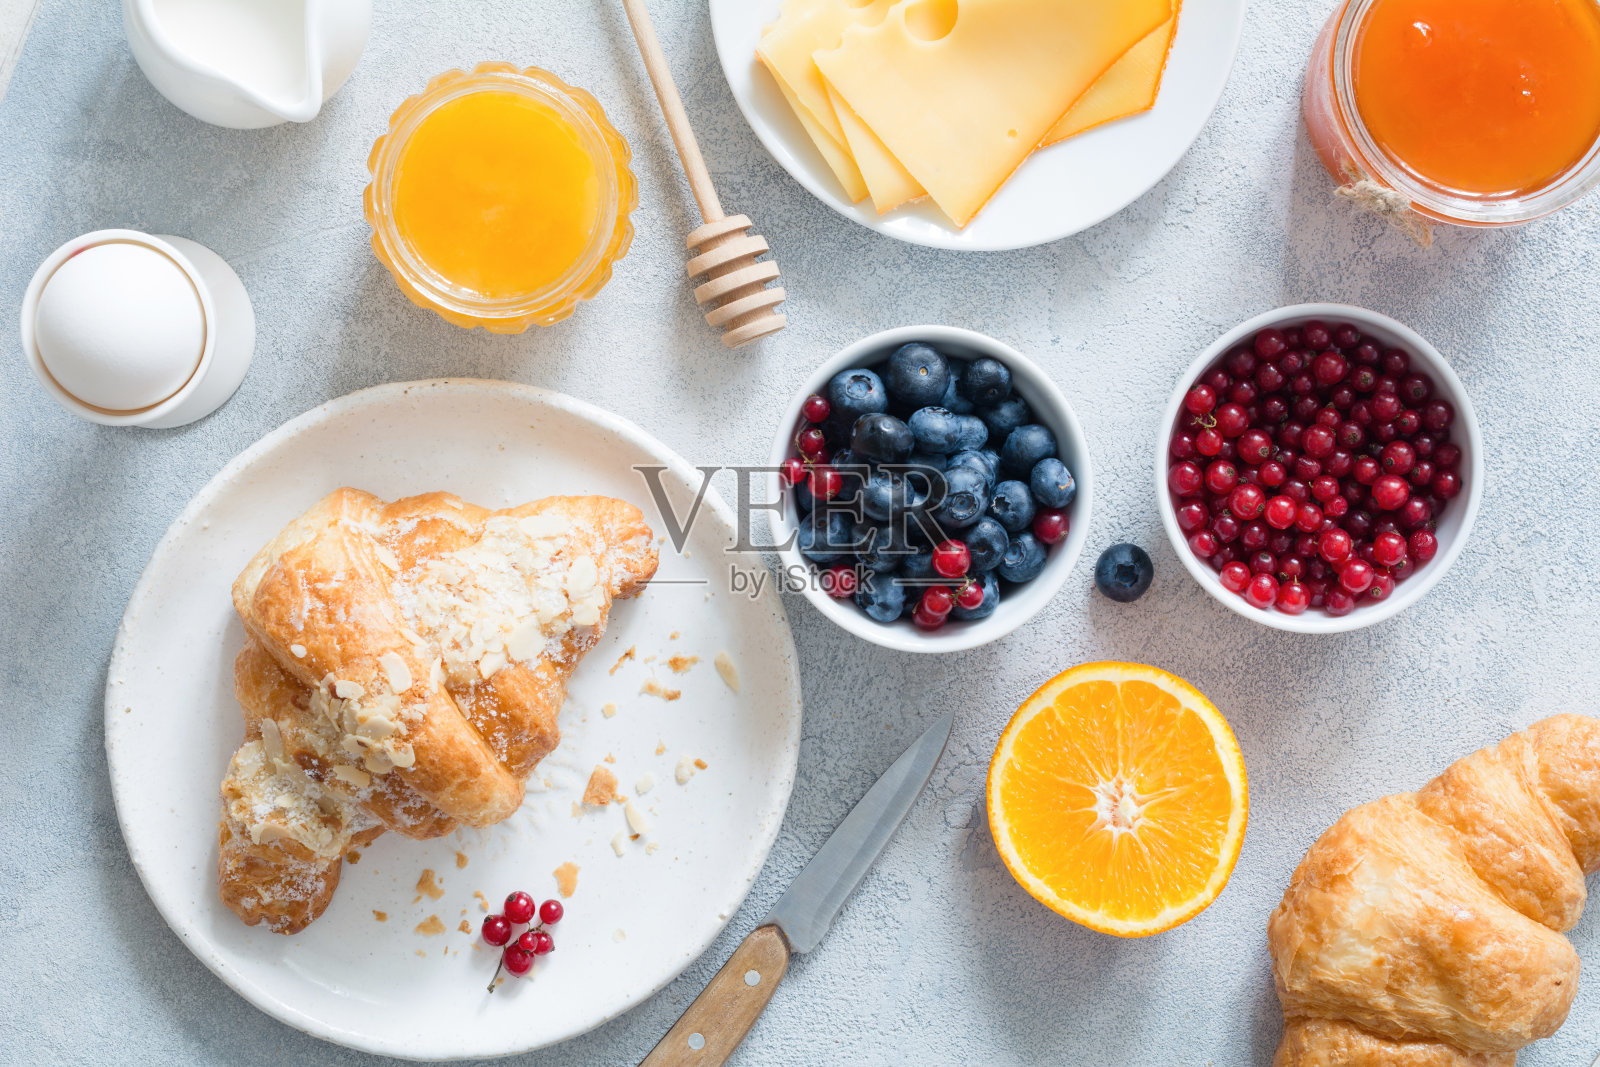 羊角面包，蜂蜜，奶酪，果酱，新鲜浆果和水果。大陆式早餐照片摄影图片